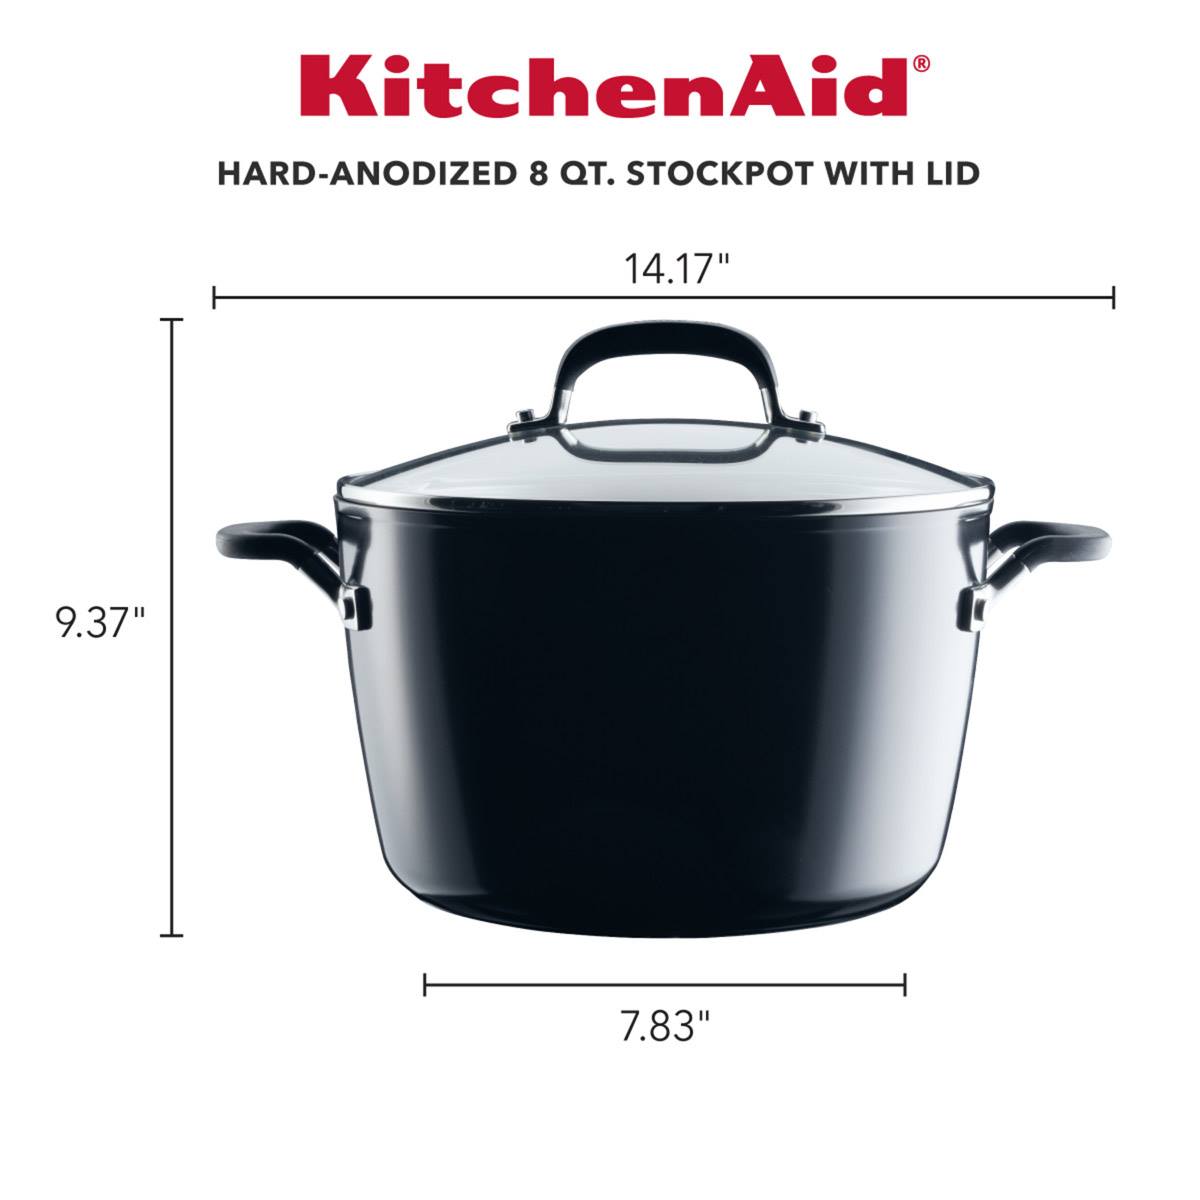 KitchenAid(R) Hard-Anodized Nonstick 8qt. Stockpot